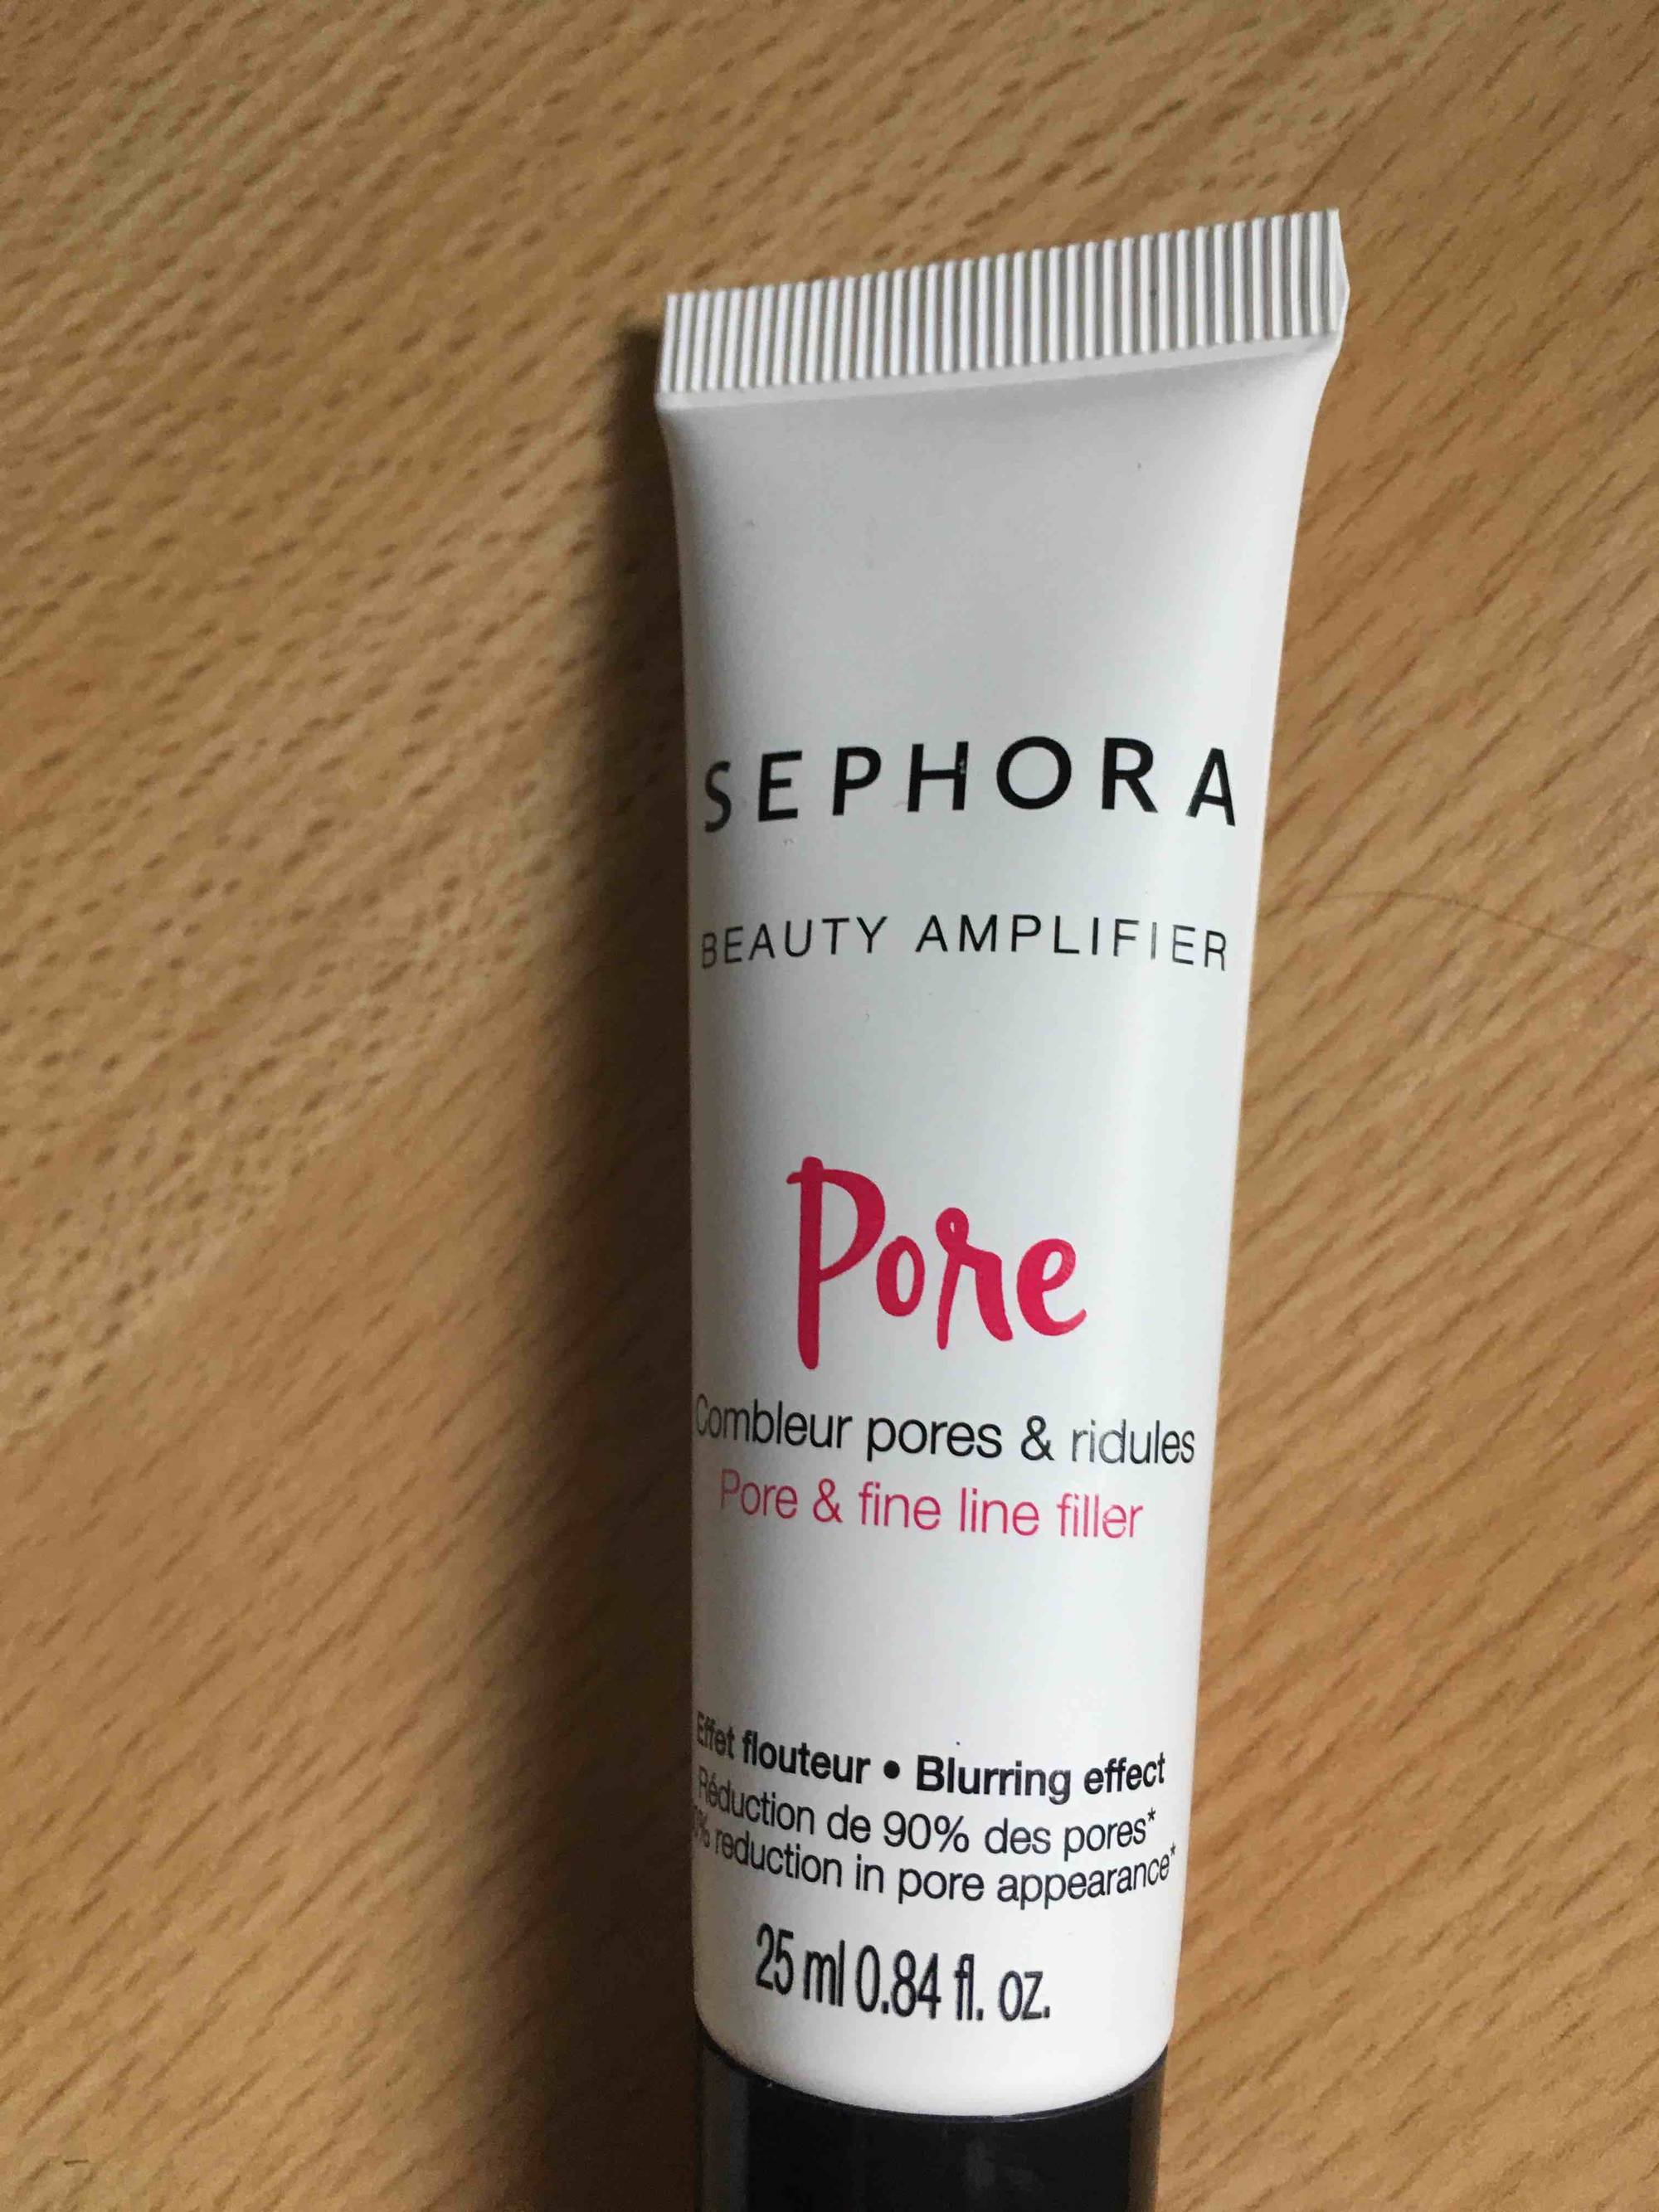 SEPHORA - Beauty amplifier Pore-  Combleur pores & ridules